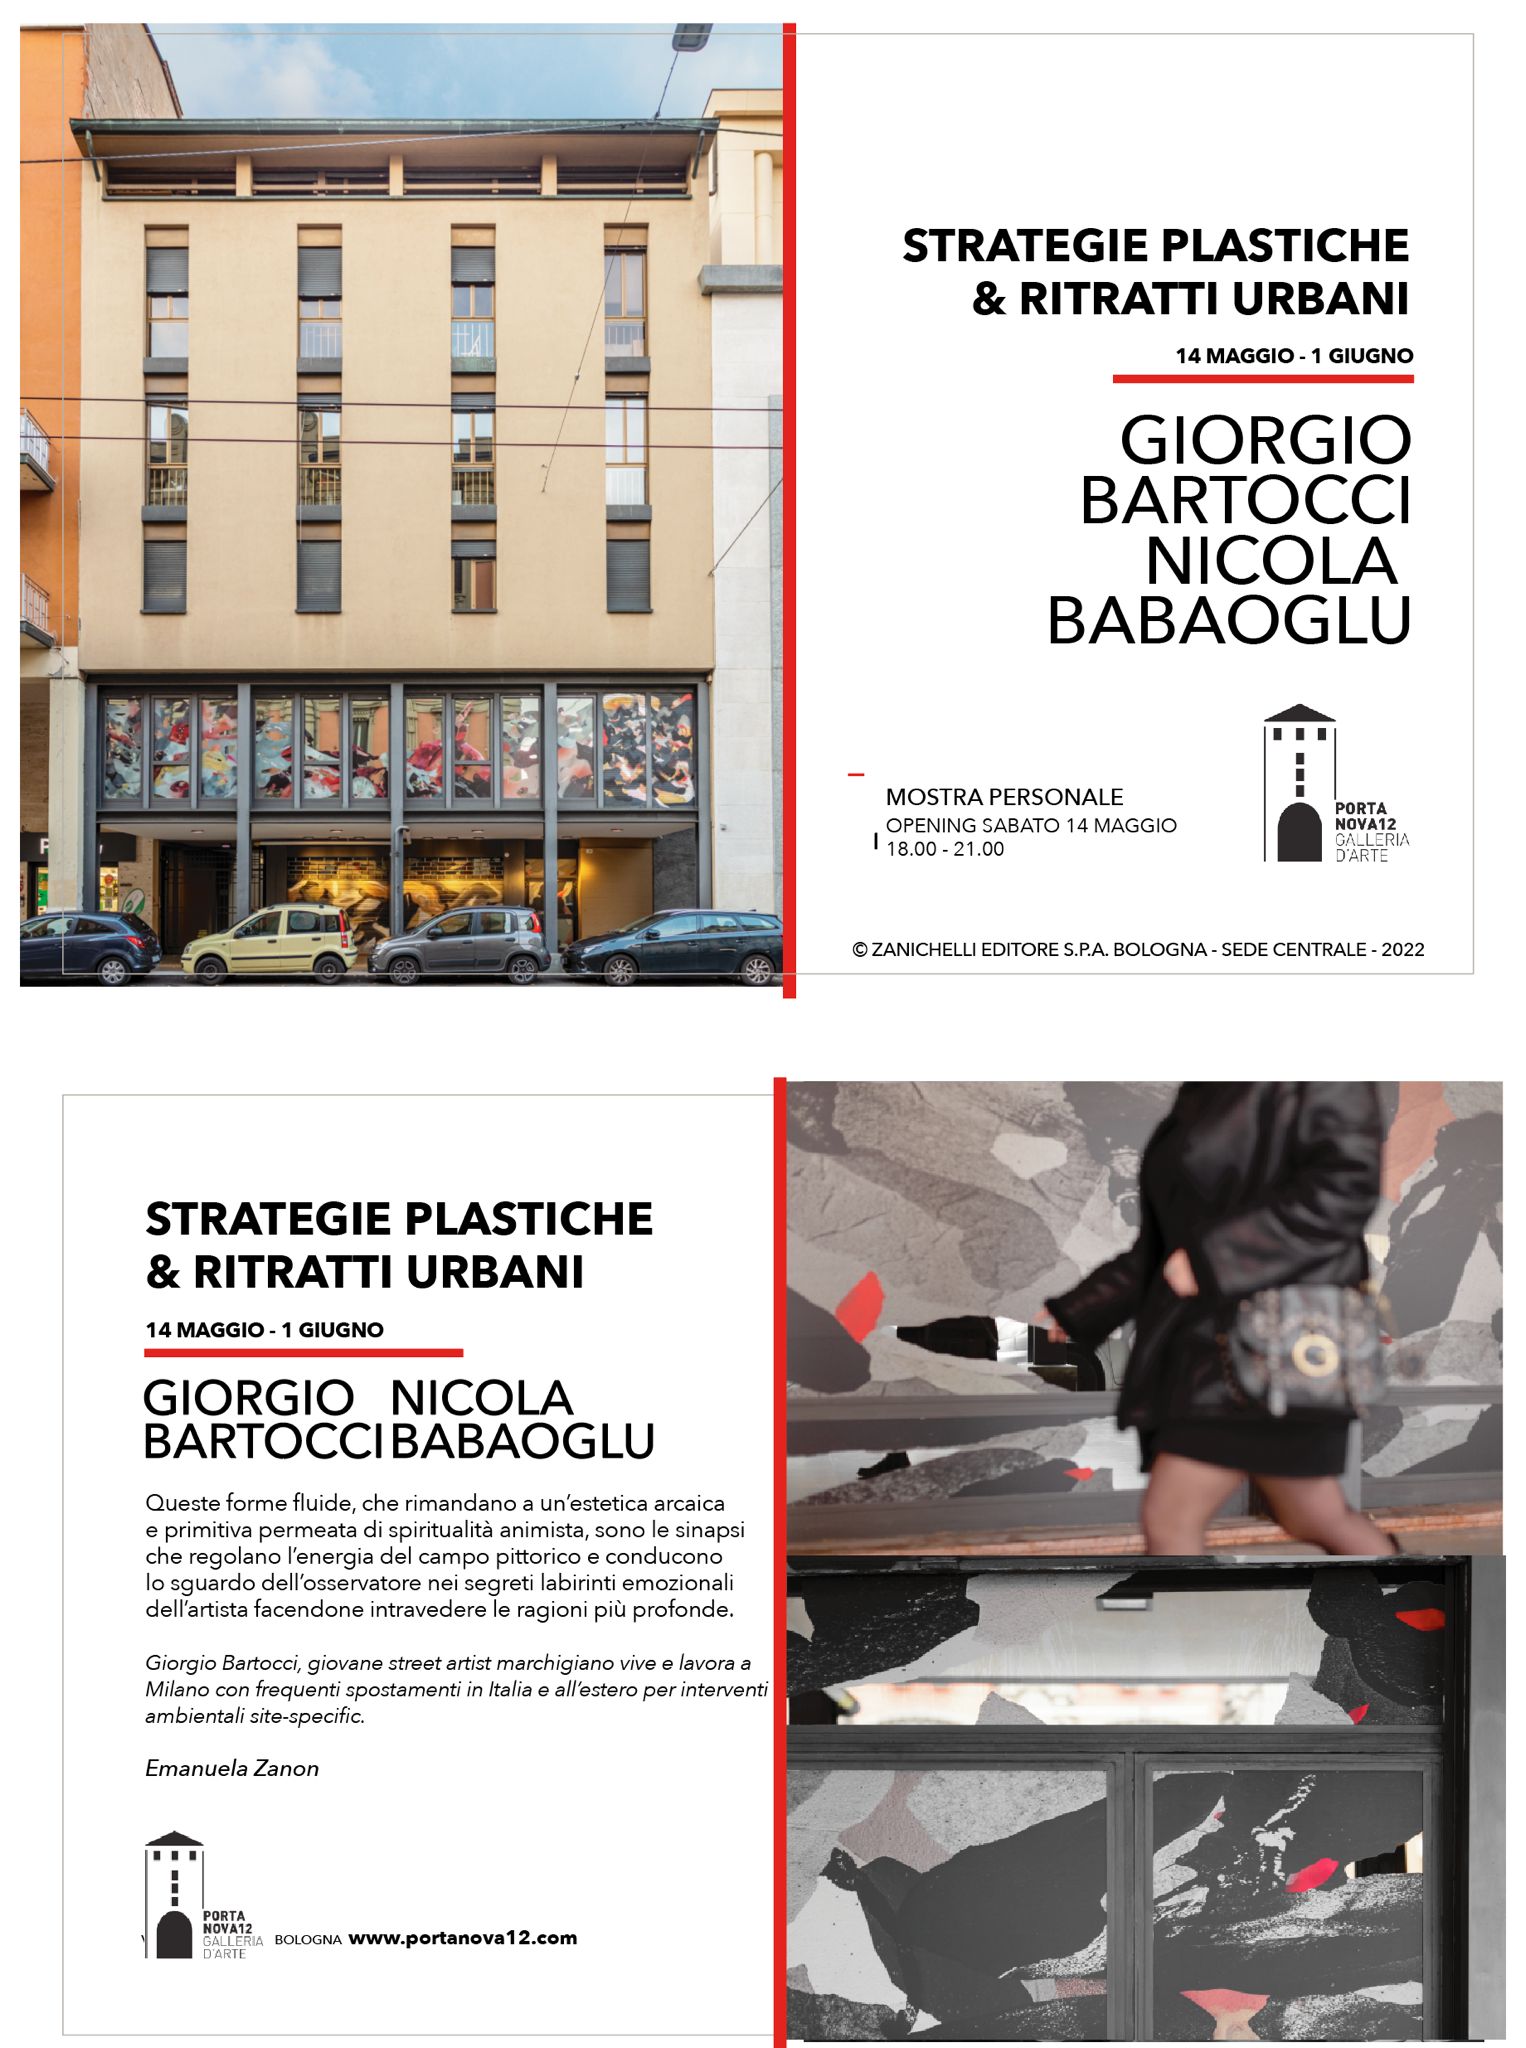 Giorgio Bartocci & Nicola Babaoglu - Strategie plastiche e Ritratti urbani